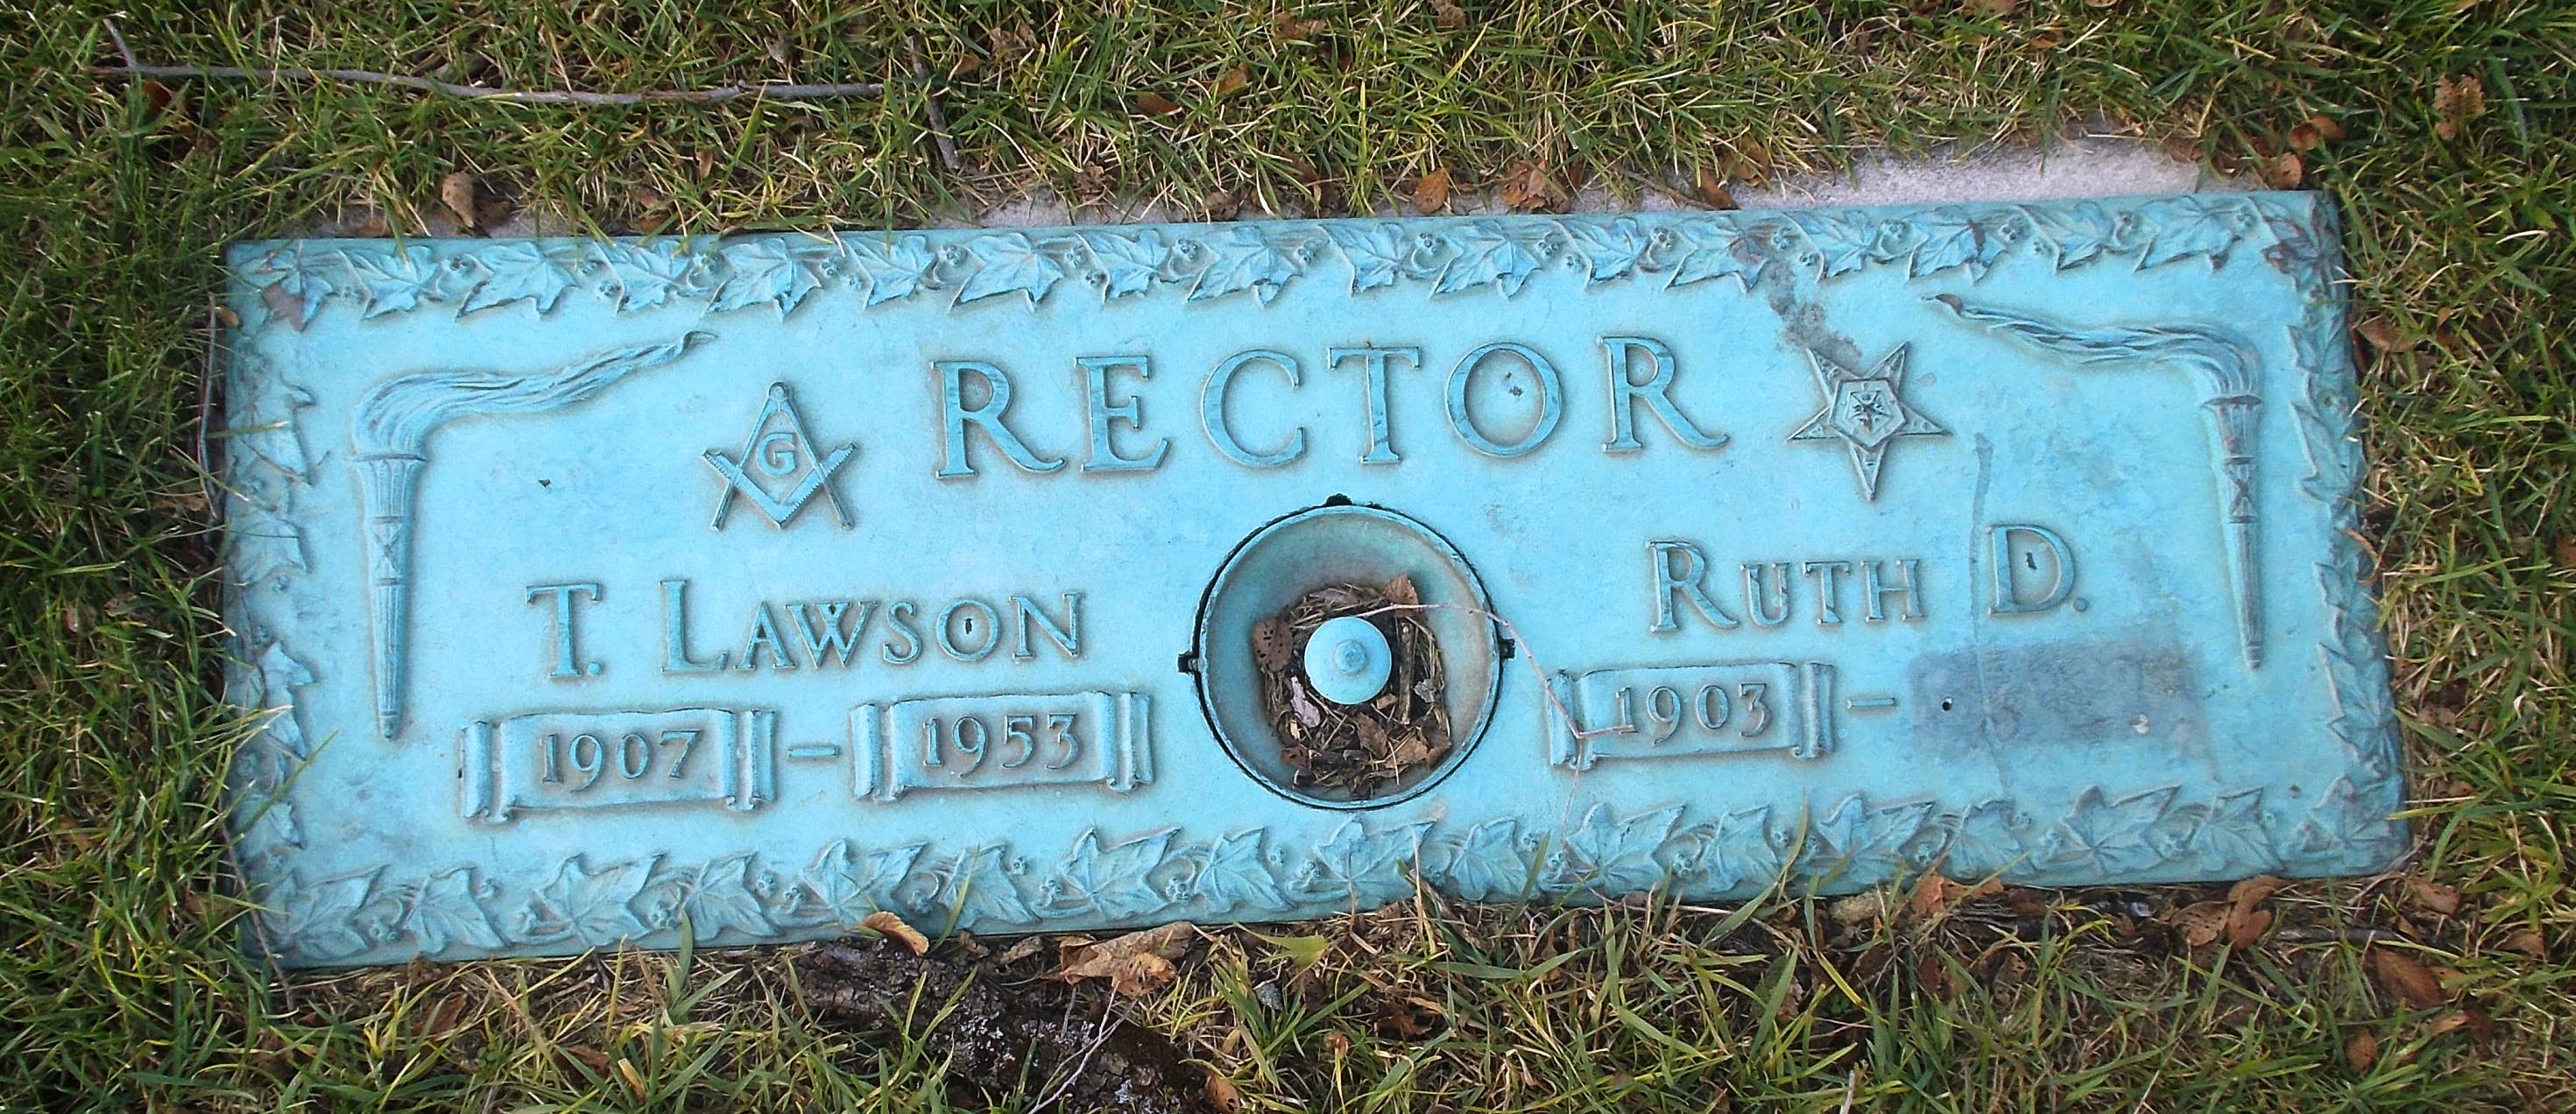 Ruth D Rector